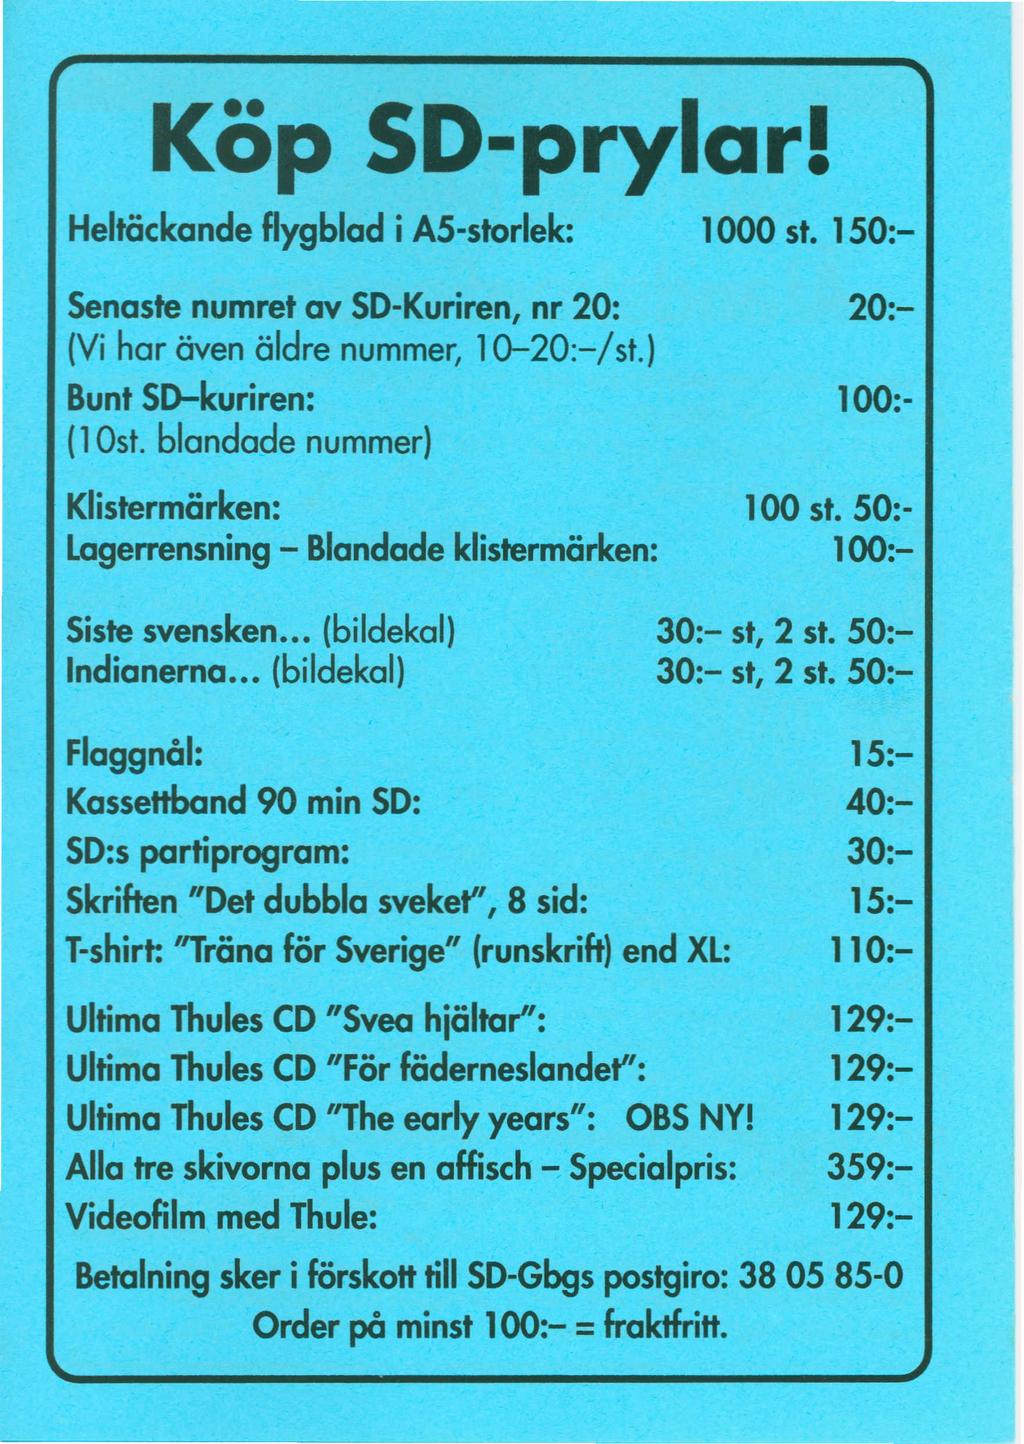 Kop SD-prylar! HeltCickandeflygblad i A5-storlek: Senaste numret av so-kuriren, nr 20: (Vi har Oven aldre nummer, 1Q-20:-/st.) Bunt sd-kuriren: (lost.